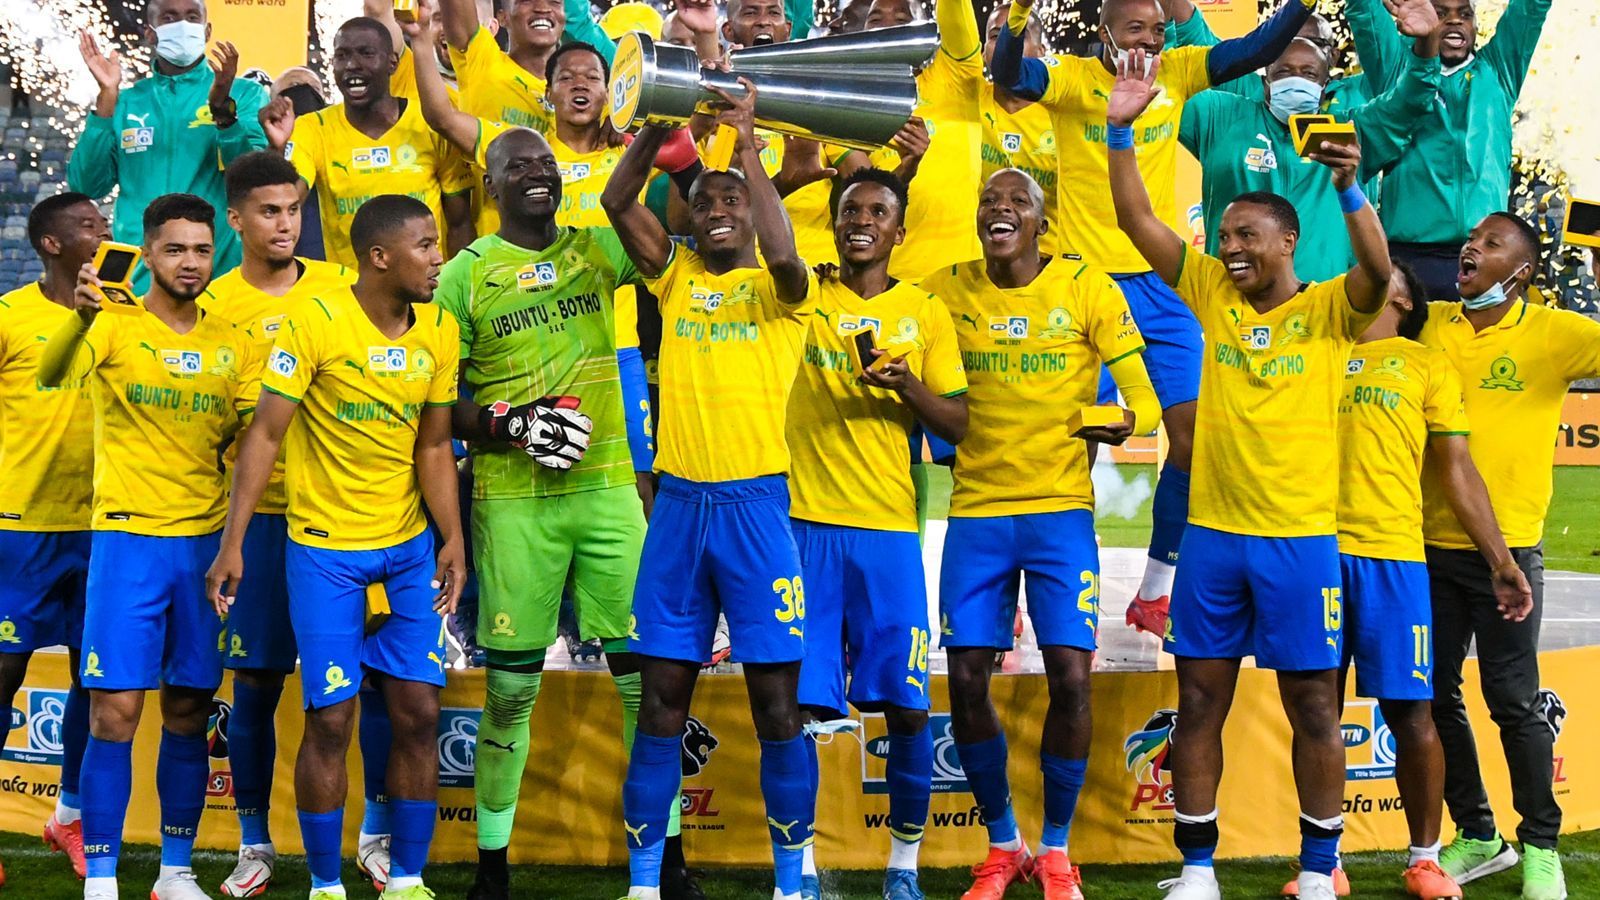 <strong>Mamelodi Sundowns FC (CAF/Südafrika)</strong><br>Qualifiziert: über das Vierjahresranking